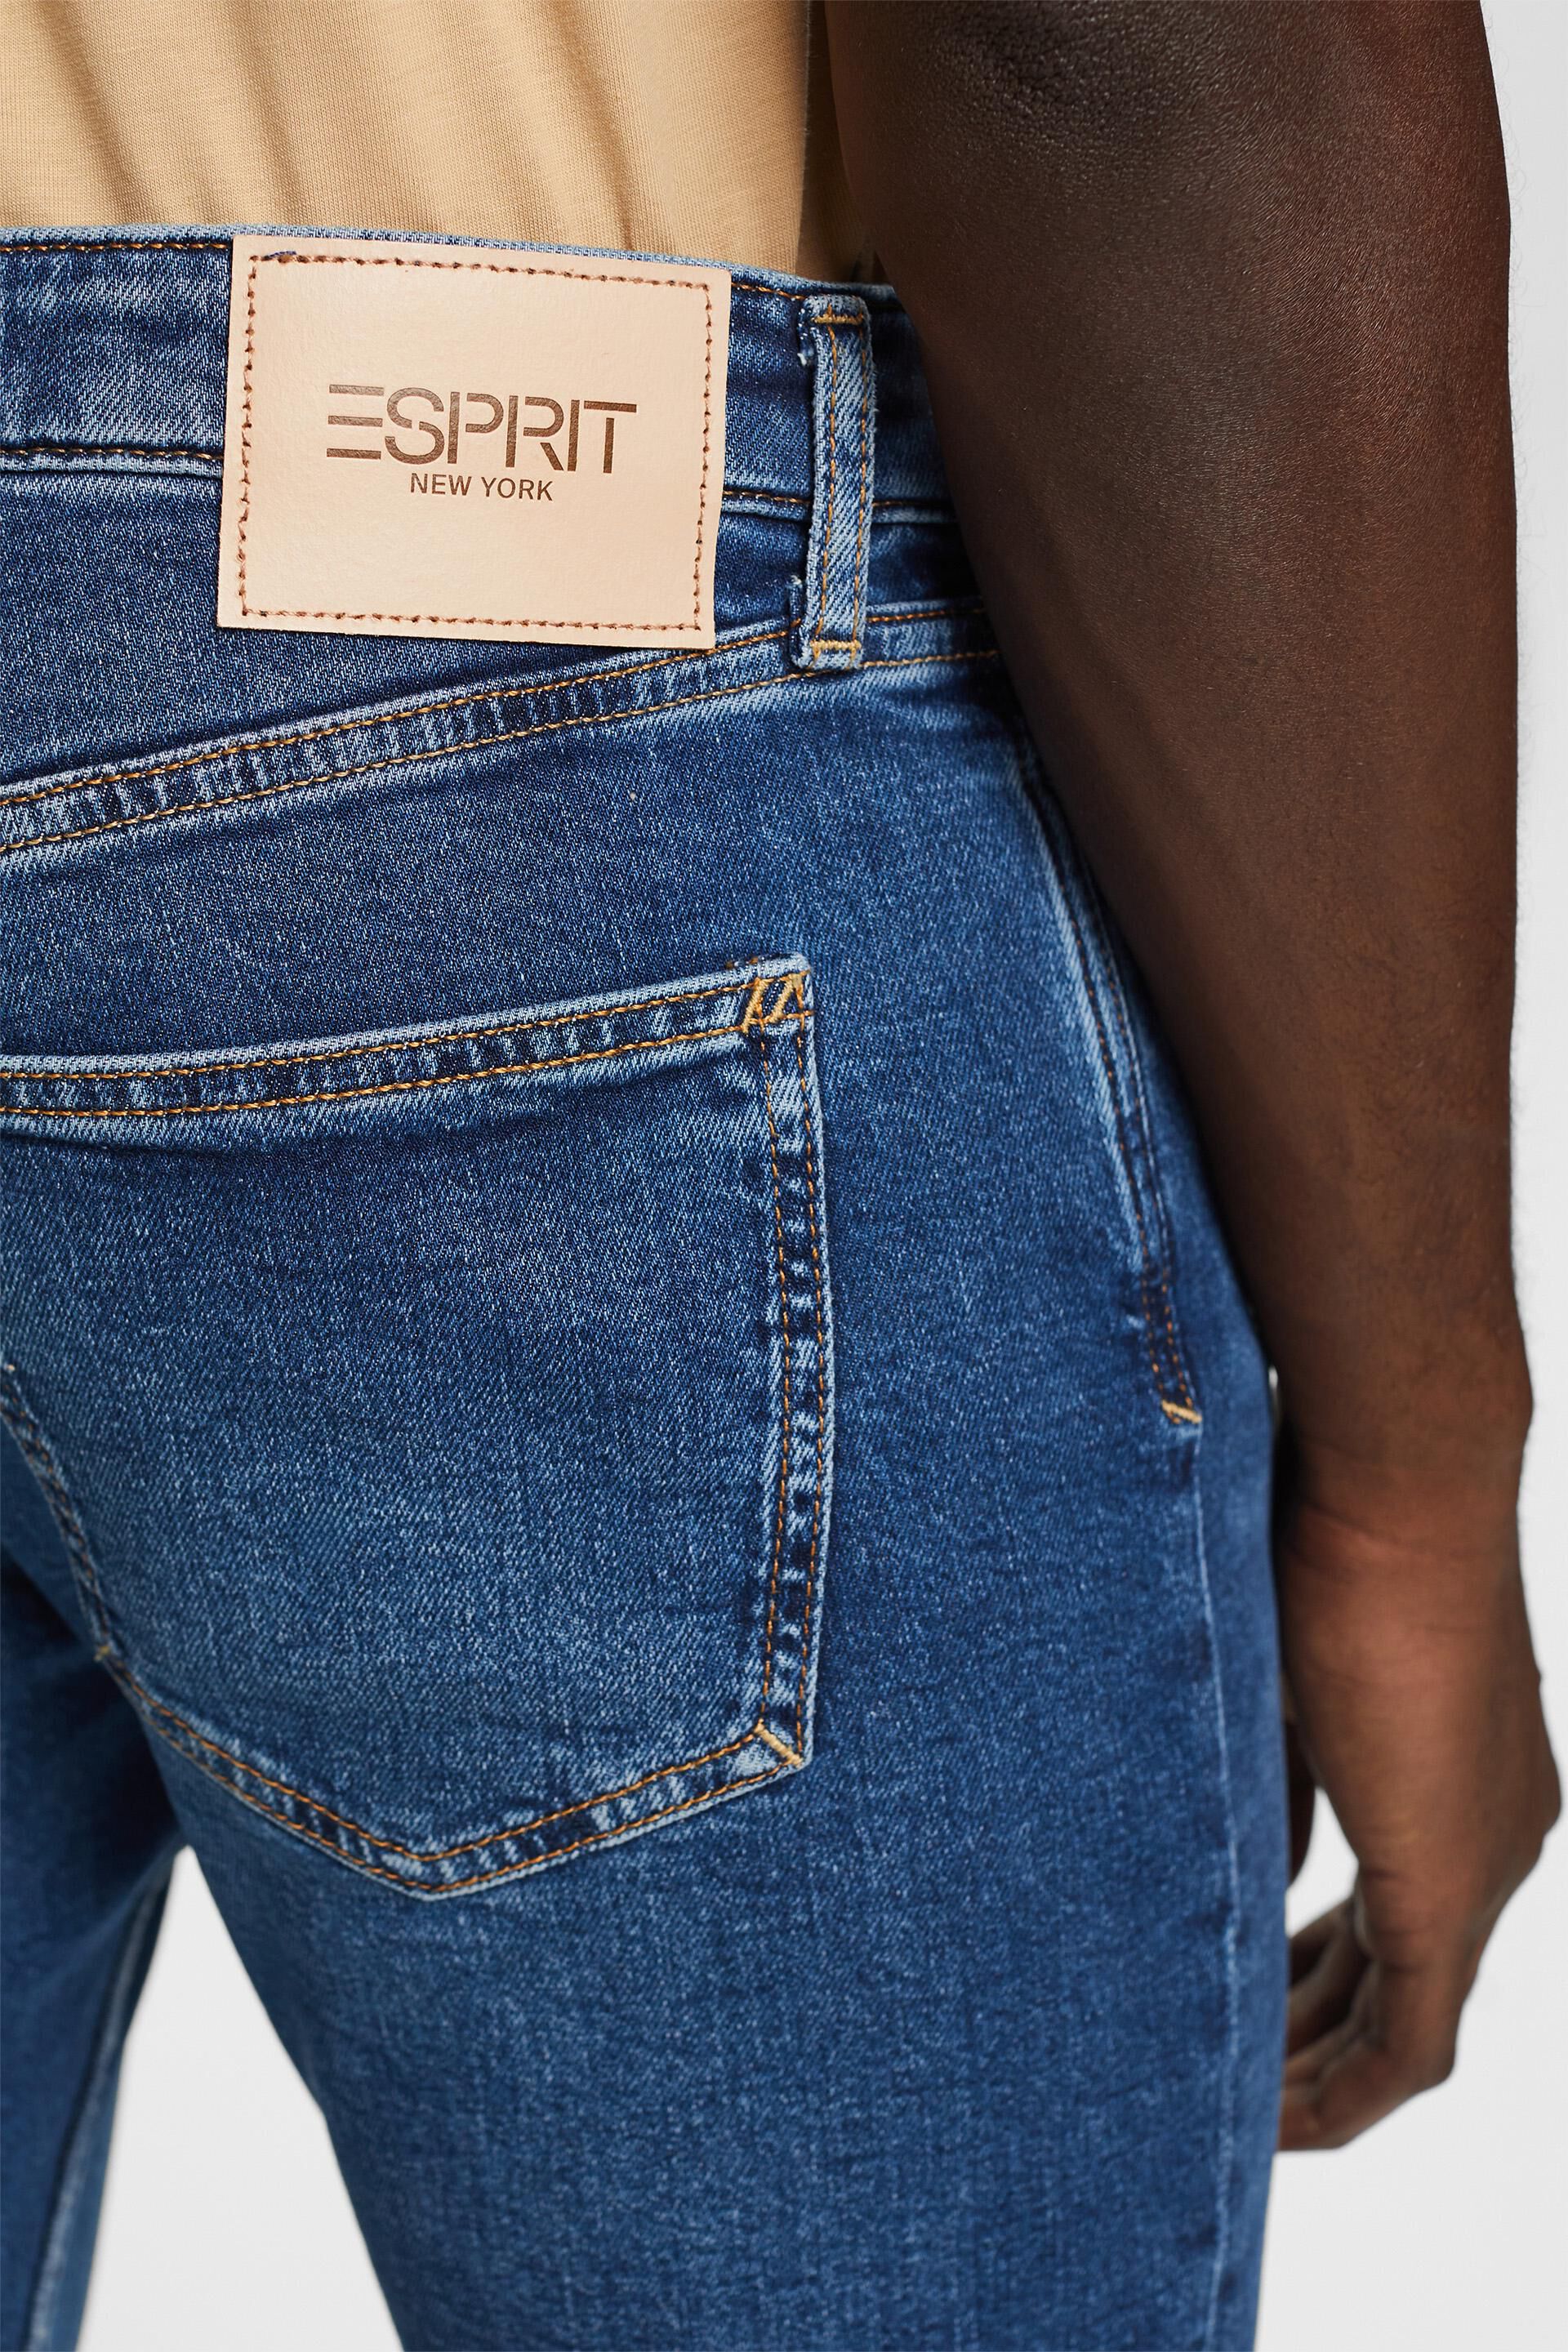 Esprit Bikini Schmal zulaufende Jeans aus Baumwolle recycelter